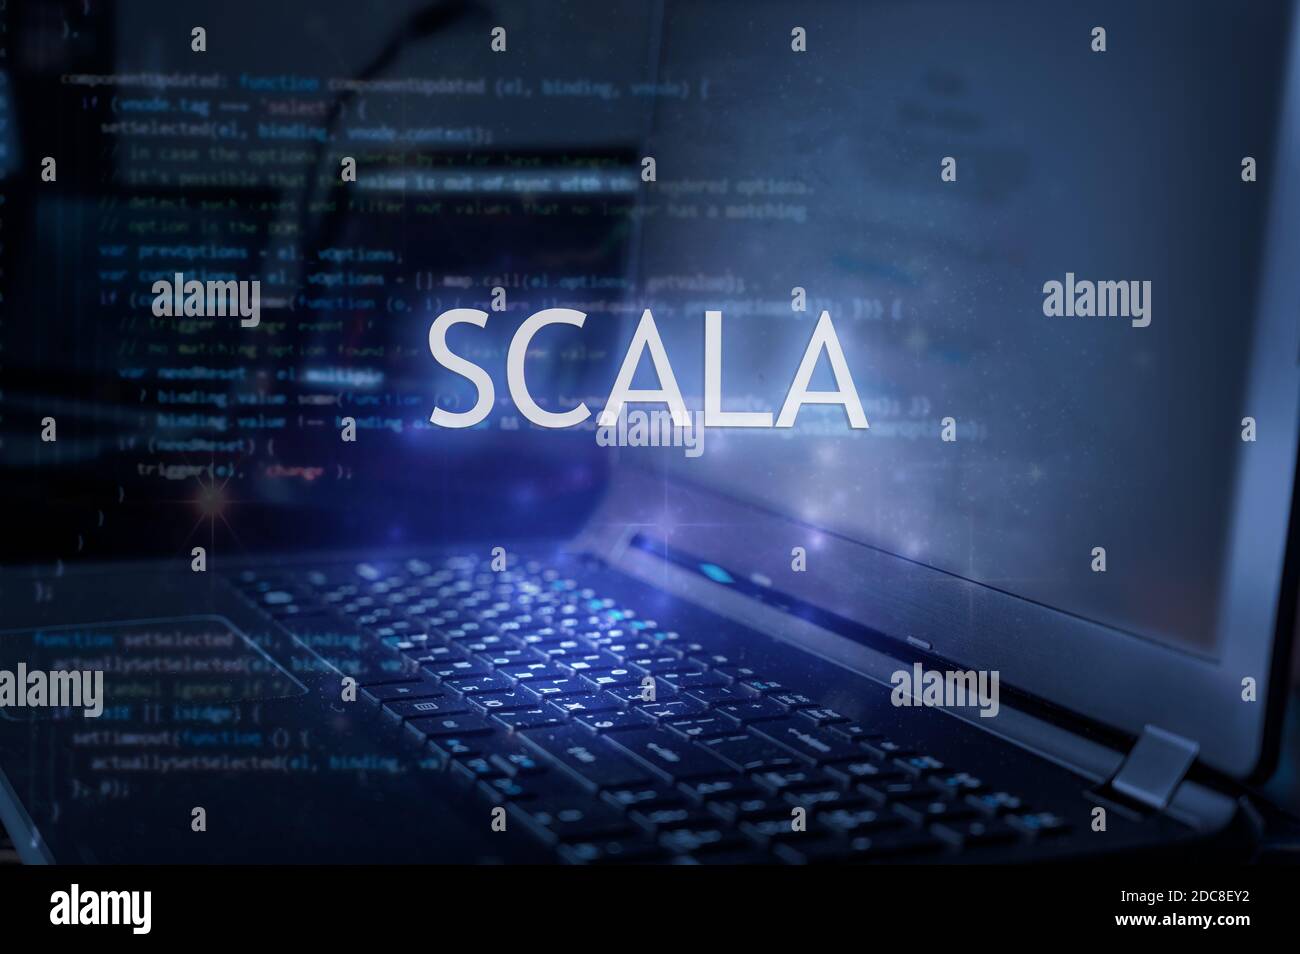 Inscripción Scala contra el portátil y el código de fondo. Aprender lenguaje de programación de scala, cursos de informática, formación. Foto de stock